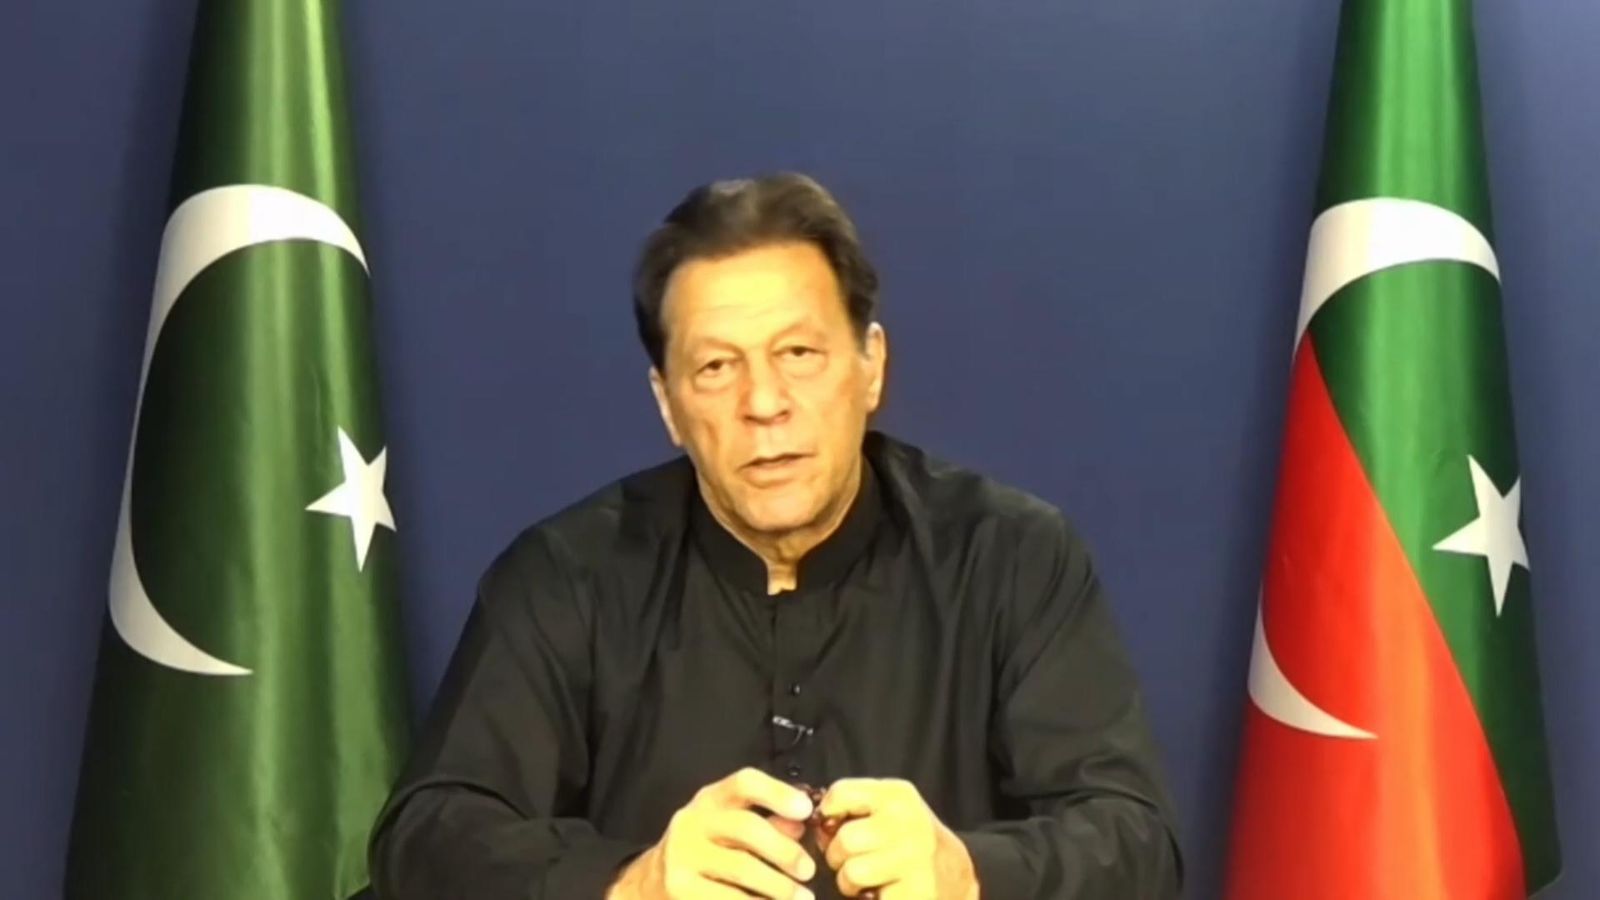 L’ancien Premier ministre pakistanais Imran Khan a accusé le gouvernement de “démanteler la démocratie” avant son arrestation |  Nouvelles du monde